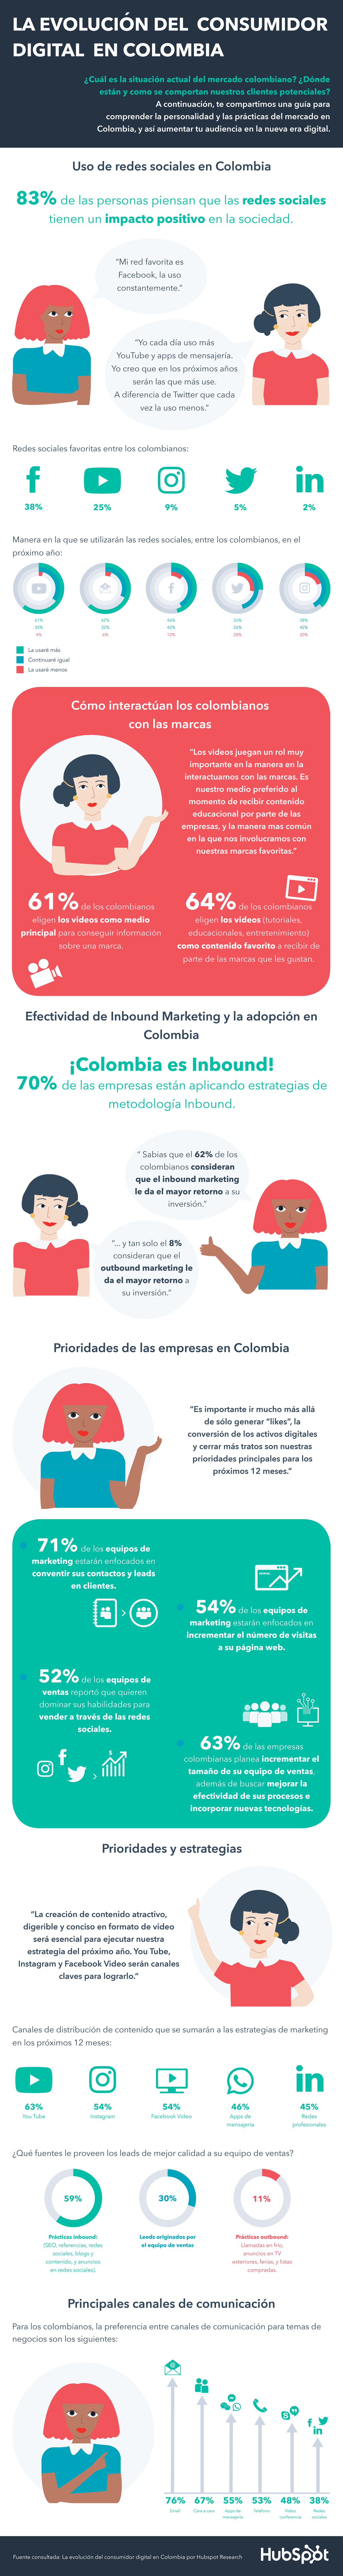 Infografia - Evolucion del consumidor digital en Colombia 031319